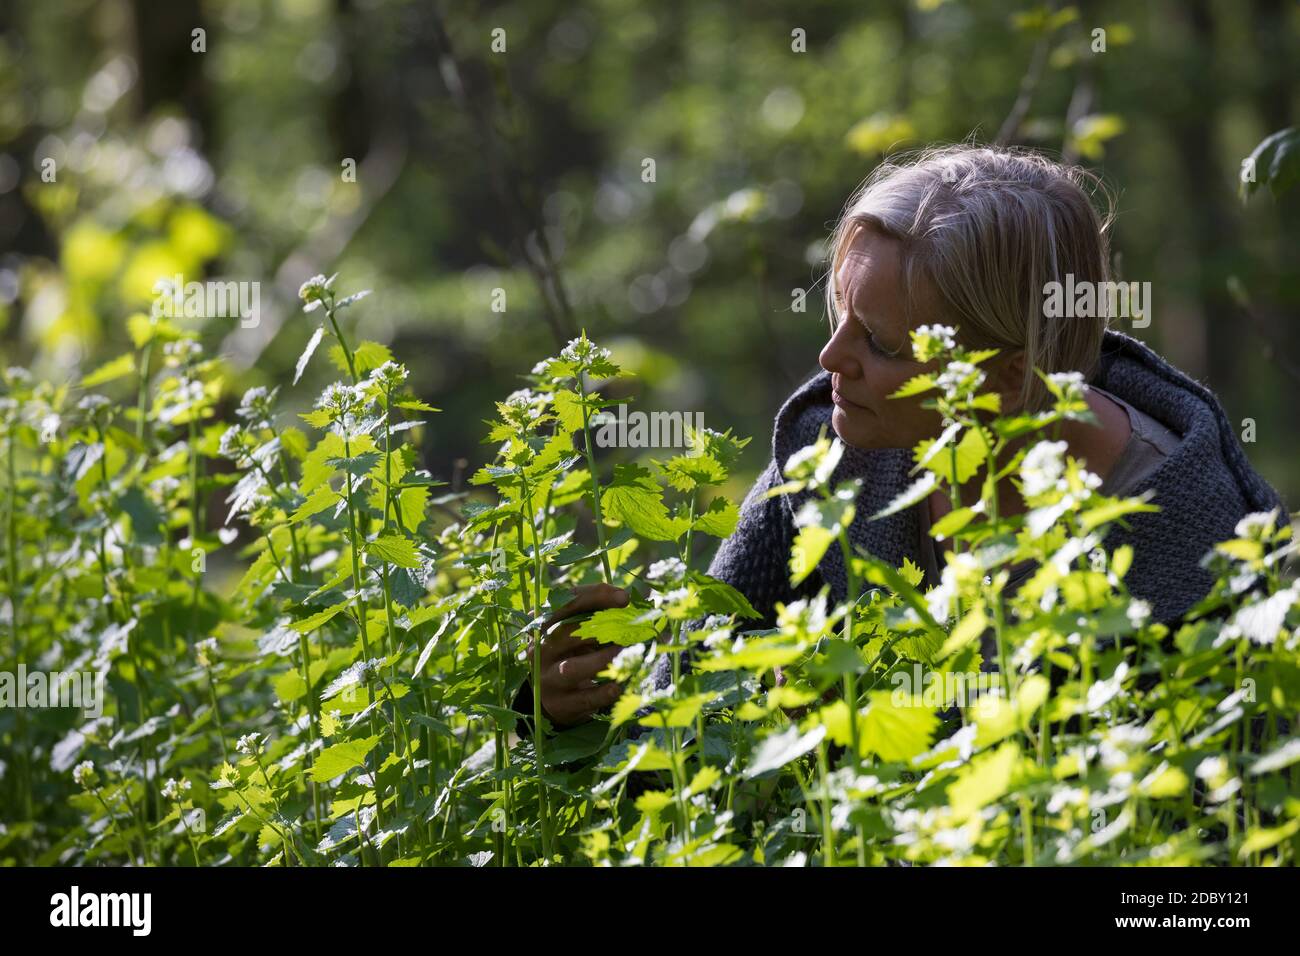 Knoblauchsrauke-Ernte, Kräuterernte, Frau in einem Bestand von Knoblauchsrauke in einem Wald, Kräuter sammeln, Knoblauchsrauke, Gewöhnliche Knoblauchs Stock Photo